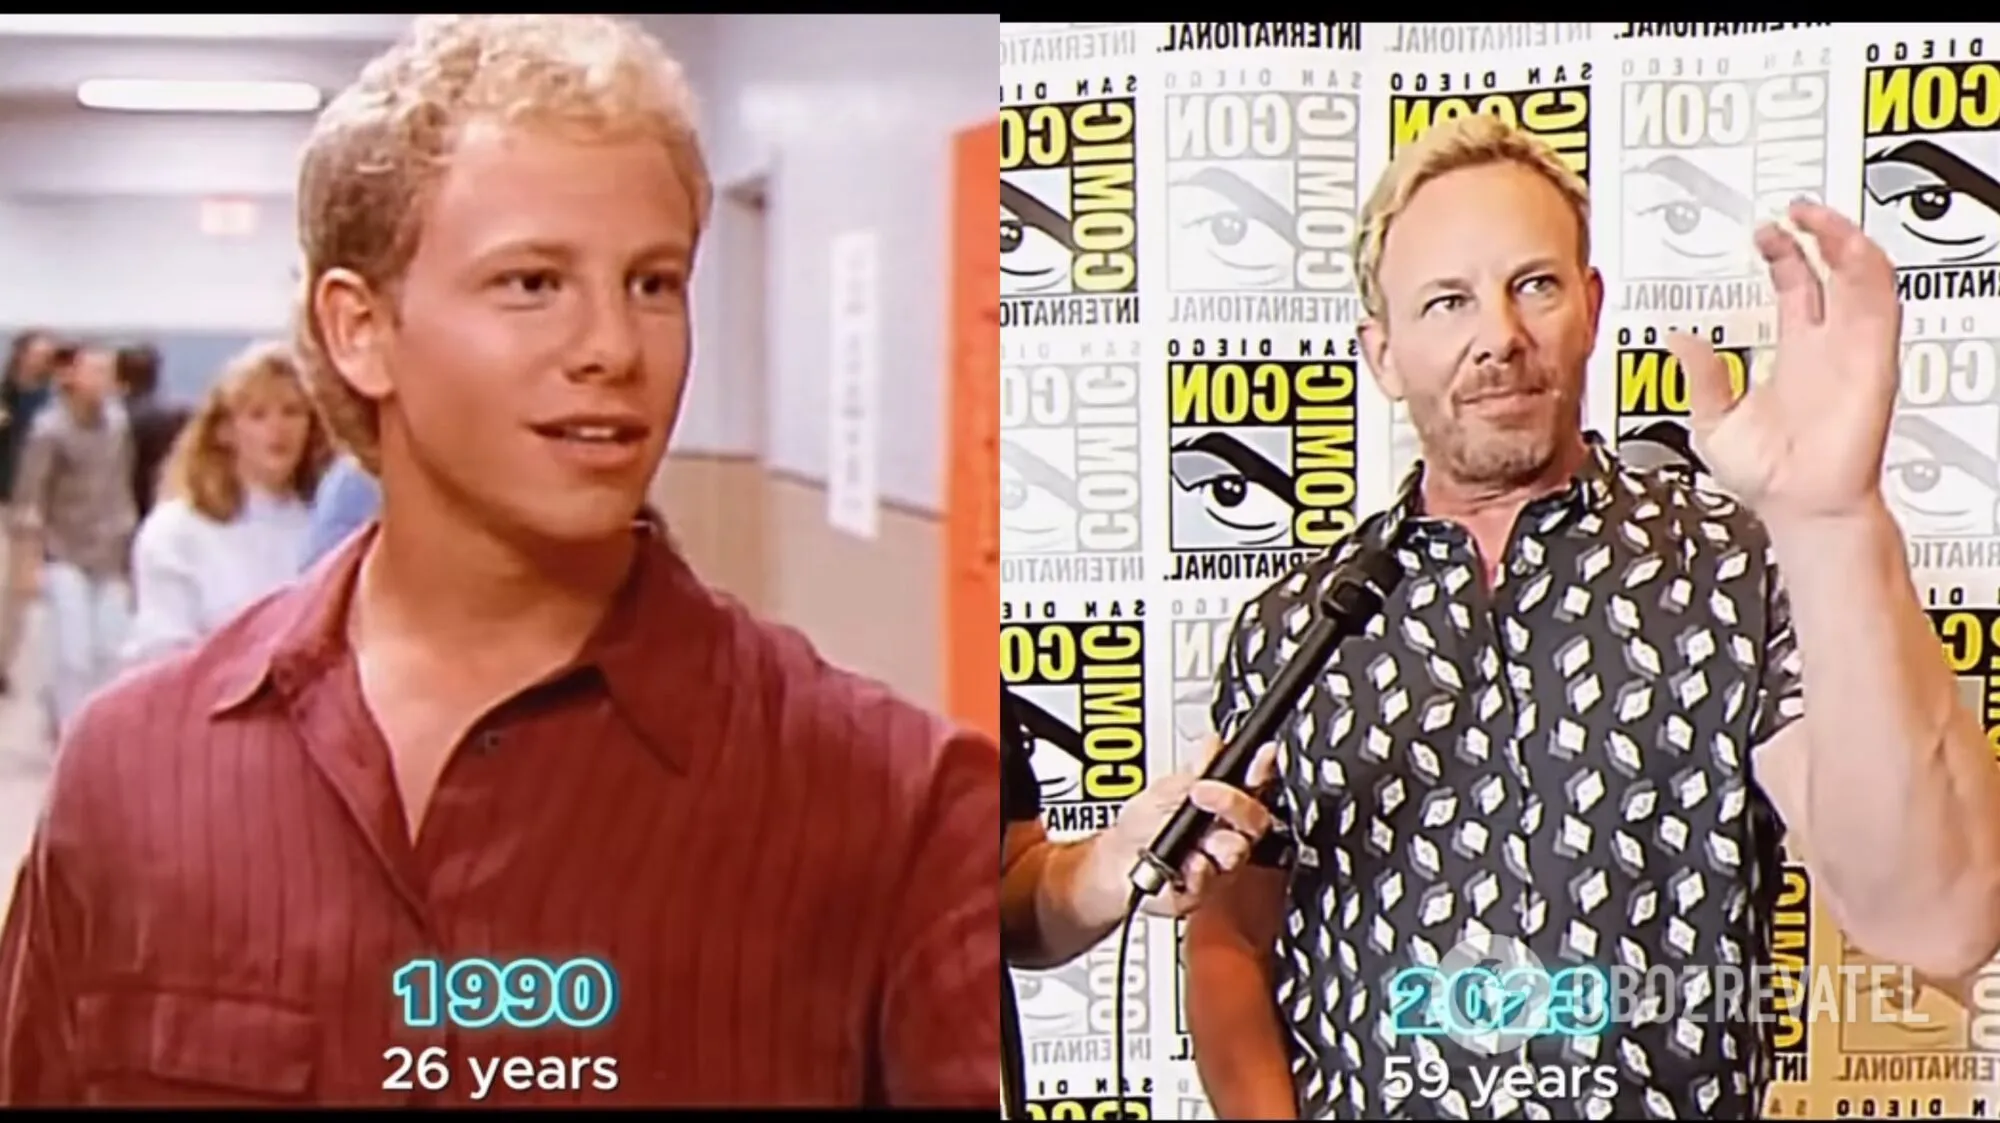 "Кучерявий у свої 60 виглядає ідеально": як постаріли актори з культового серіалу "Беверлі-Хіллз, 90210" 